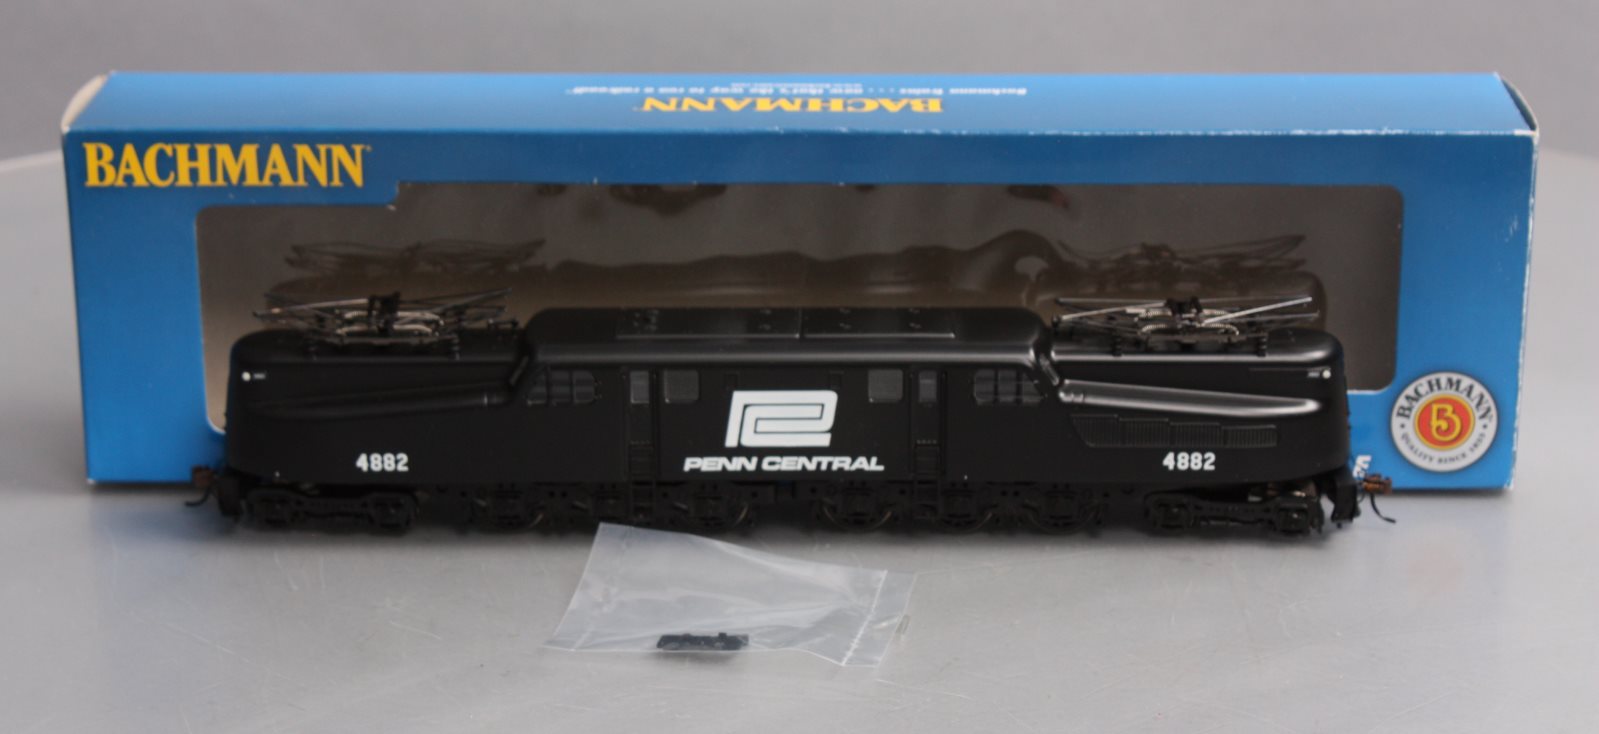 Bachmann 65205 HO Penn Central GG1 Electric Locomotive DCC Ready #4882